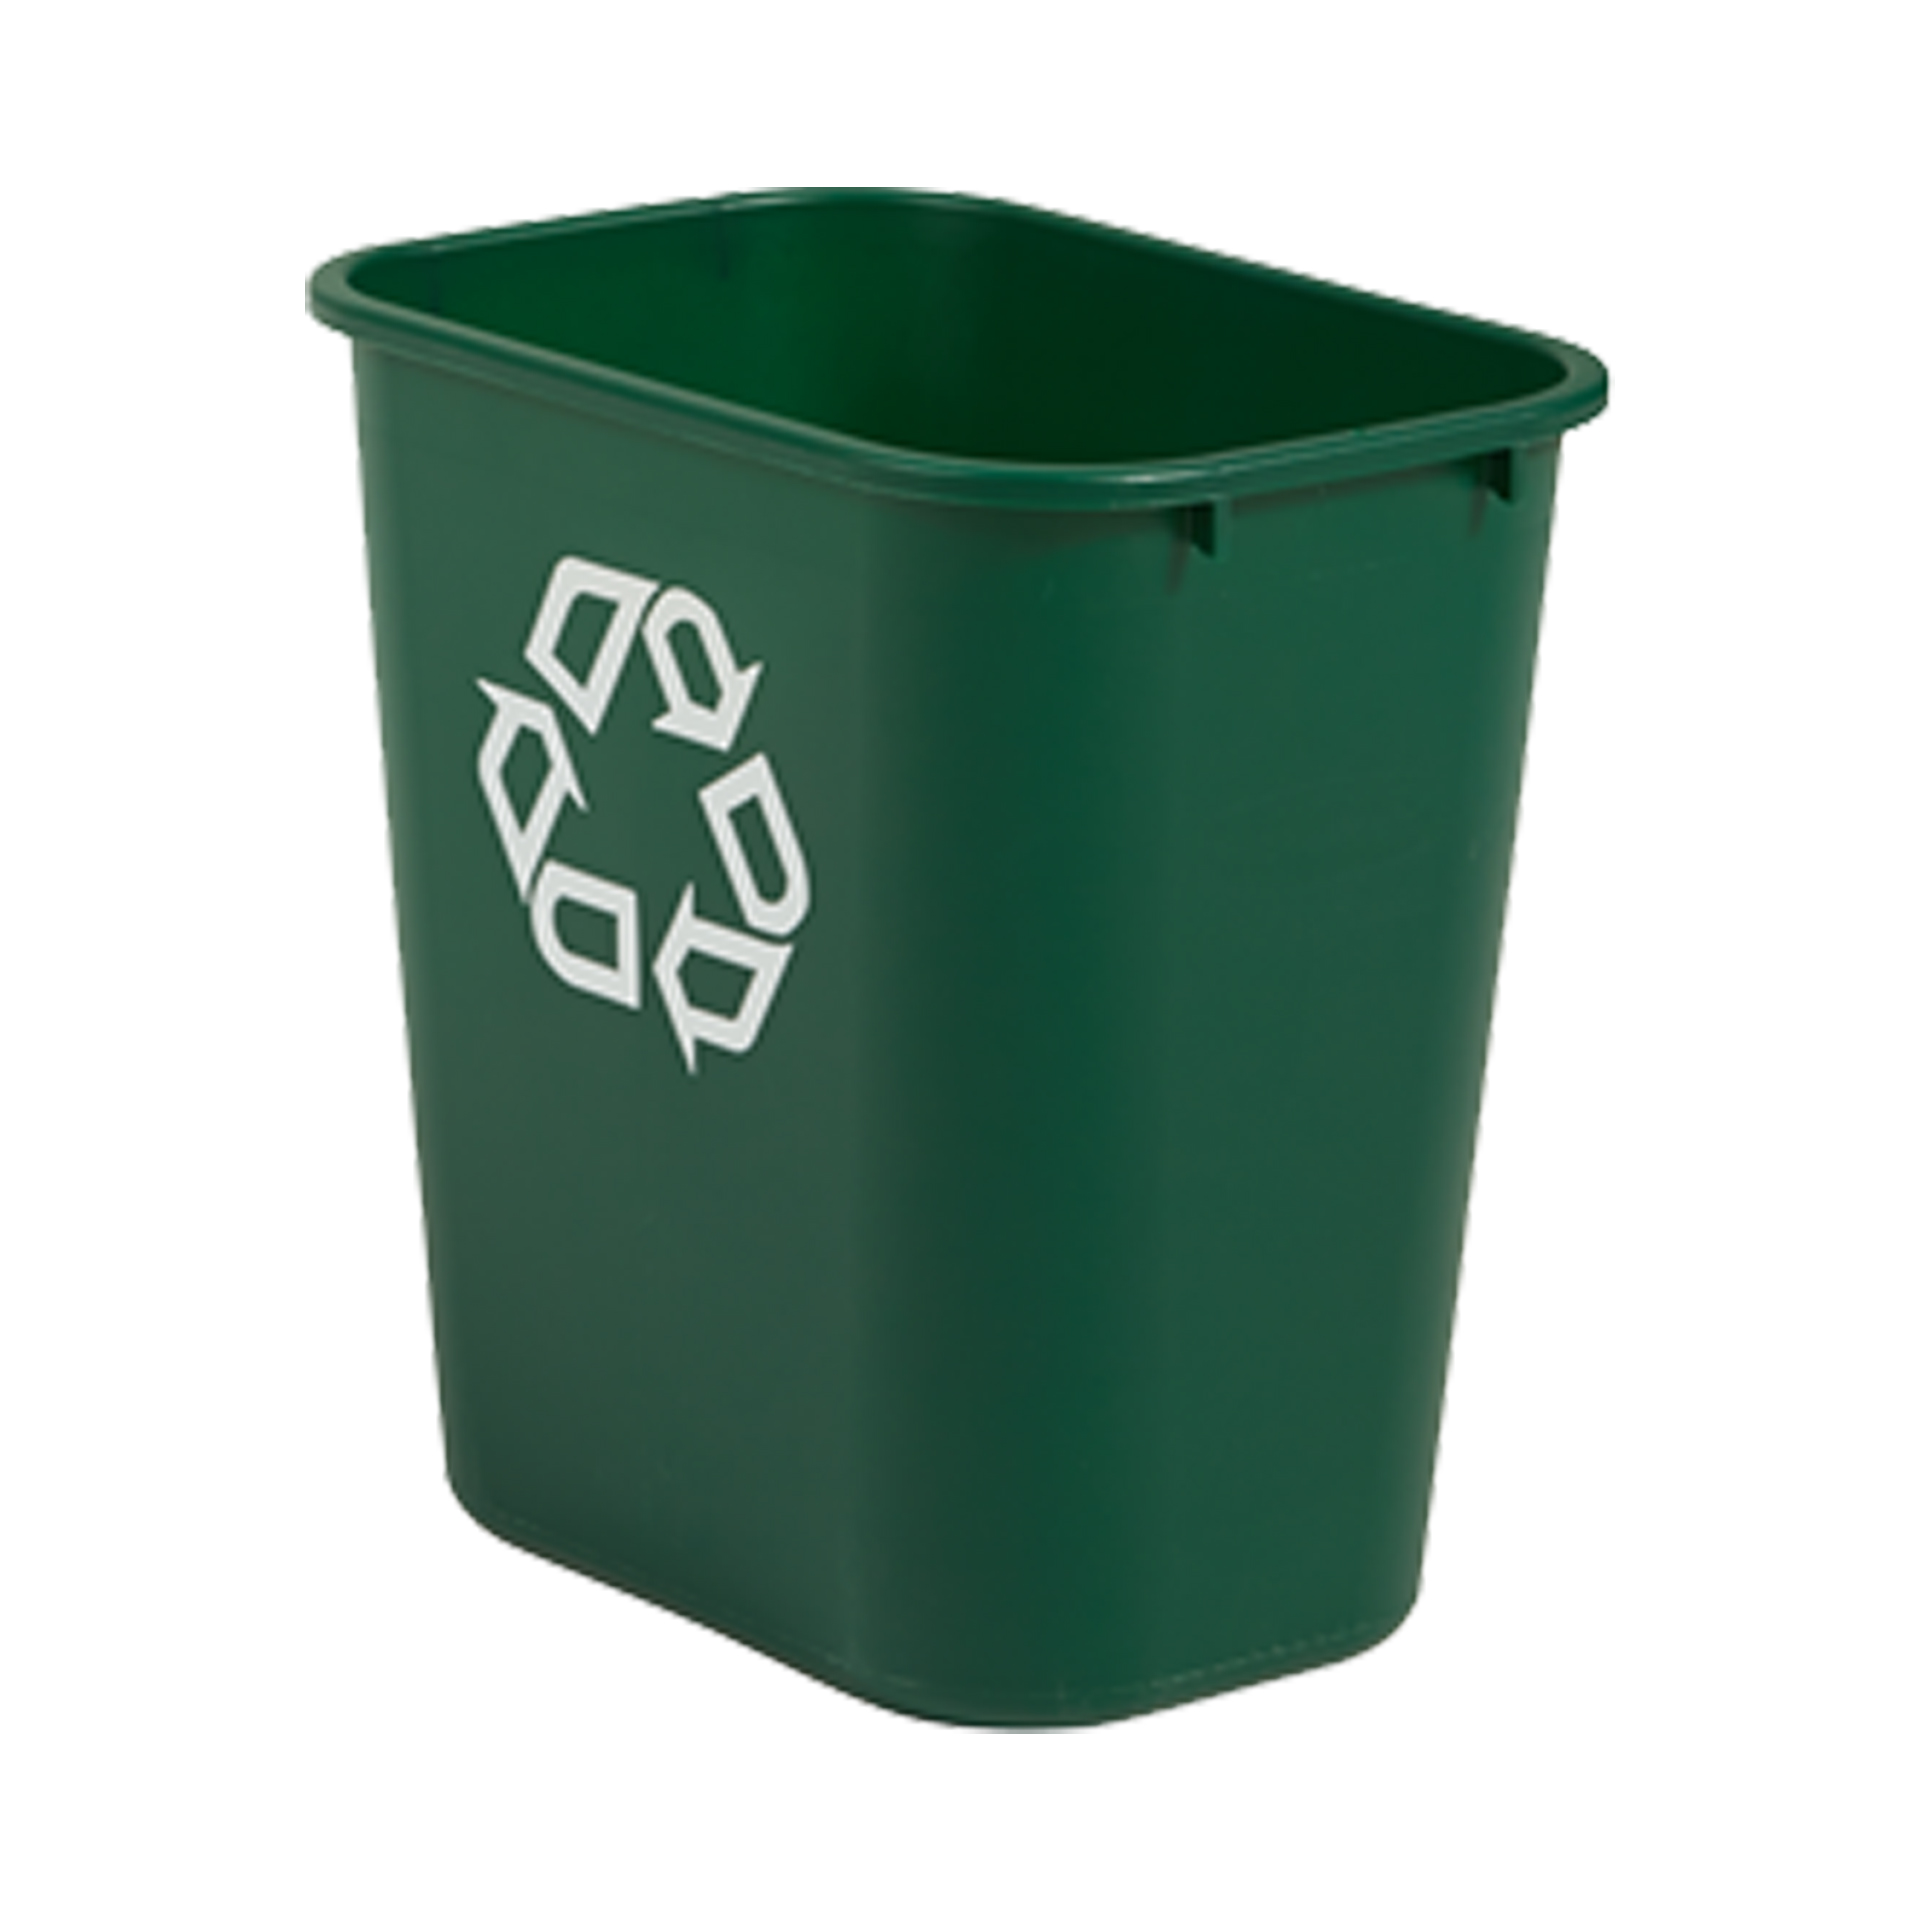 ถังขยะพลาสติก ขนาดกลาง 26.5 ลิตร สีเขียว